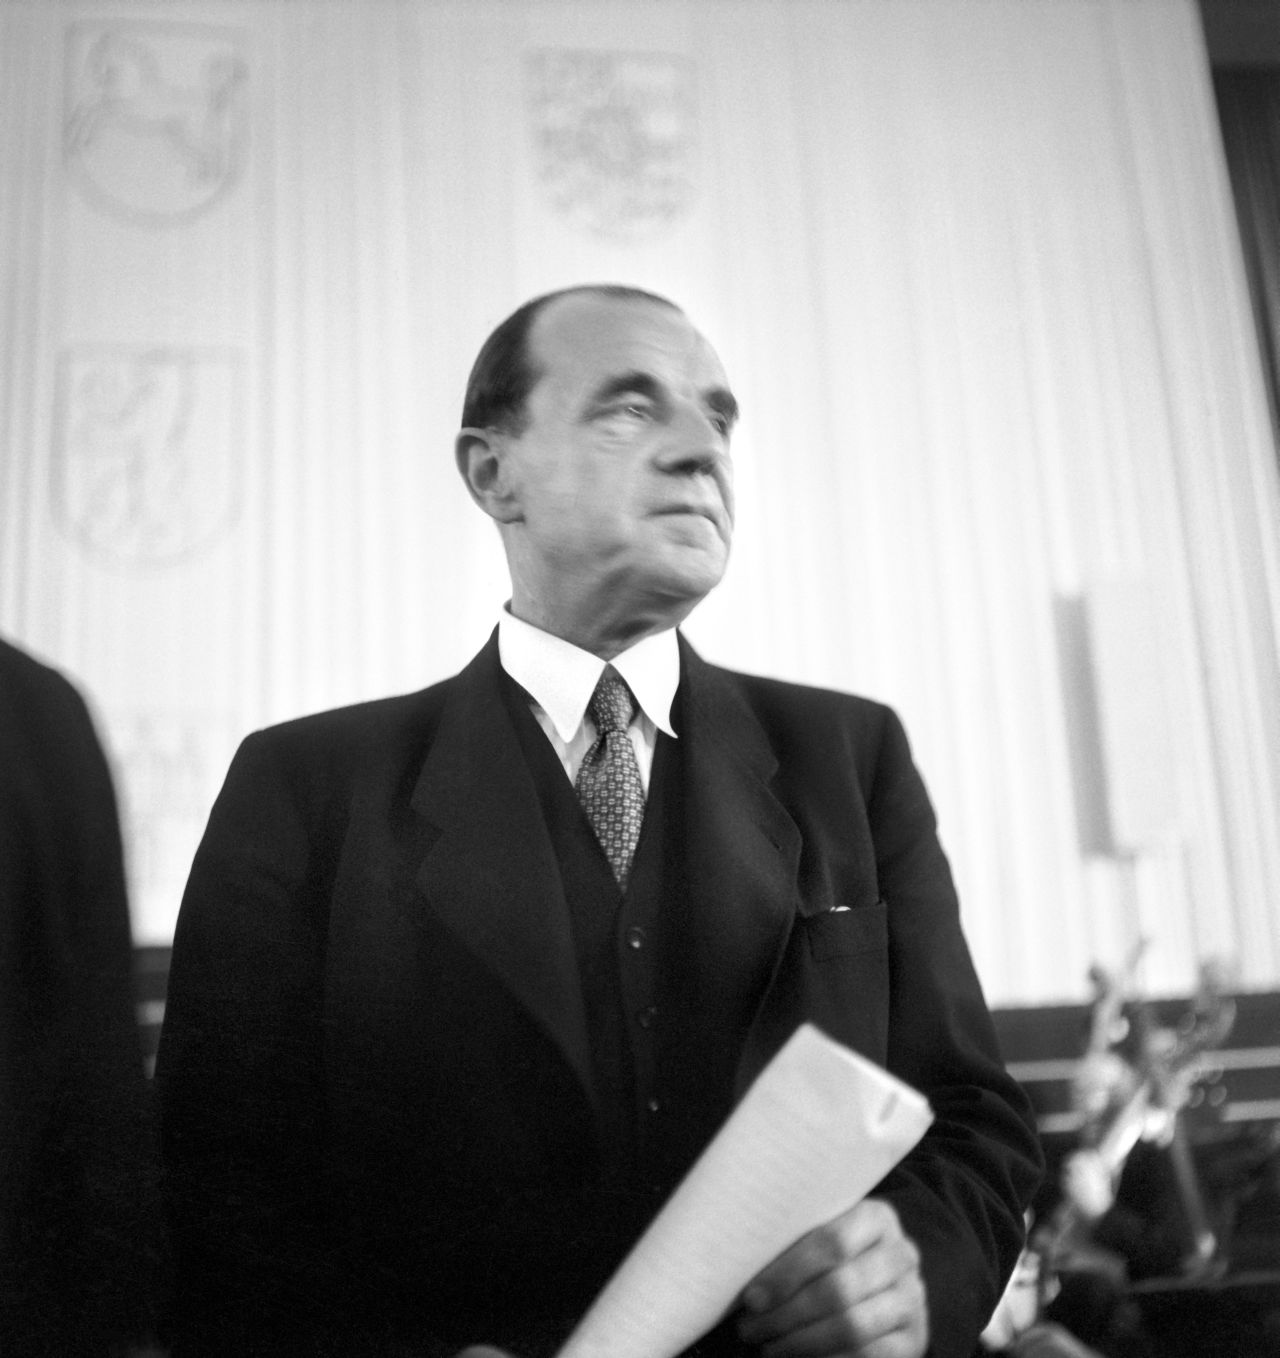 Fotografie von Erich Köhler, dem ersten Bundestagspräsidenten auf der konstituierenden Sitzung des ersten Bundestages, 1949.